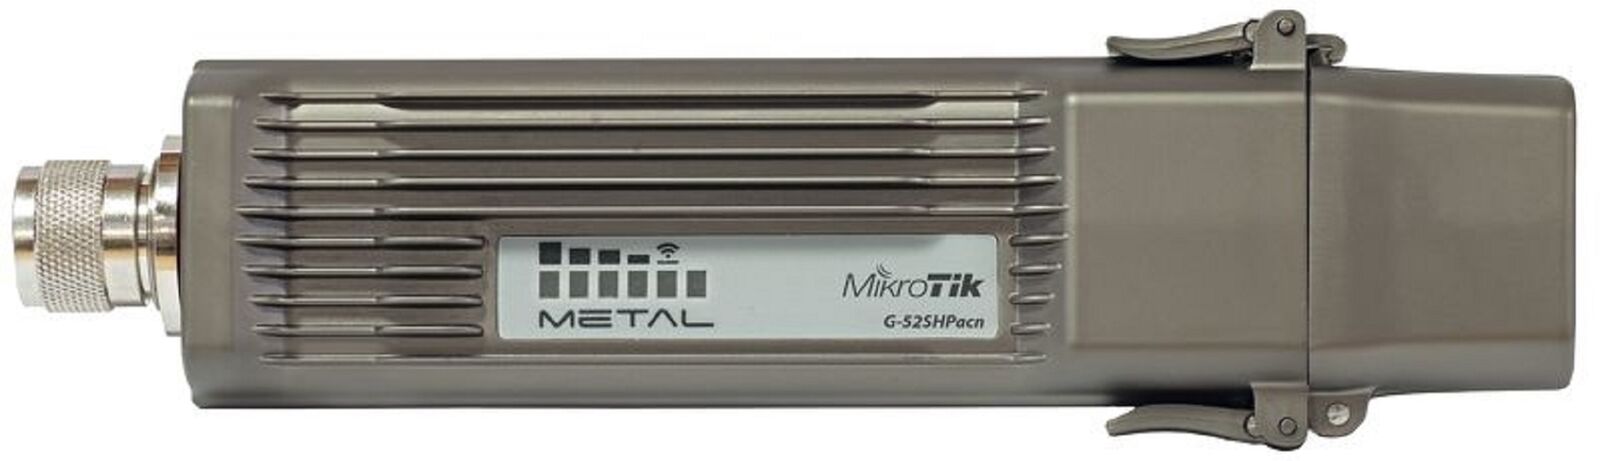 Mikrotik Metal 52ac RBMetalG-52SHPacn 64MB RAM Gbit Poe Lan Selectable Wireless